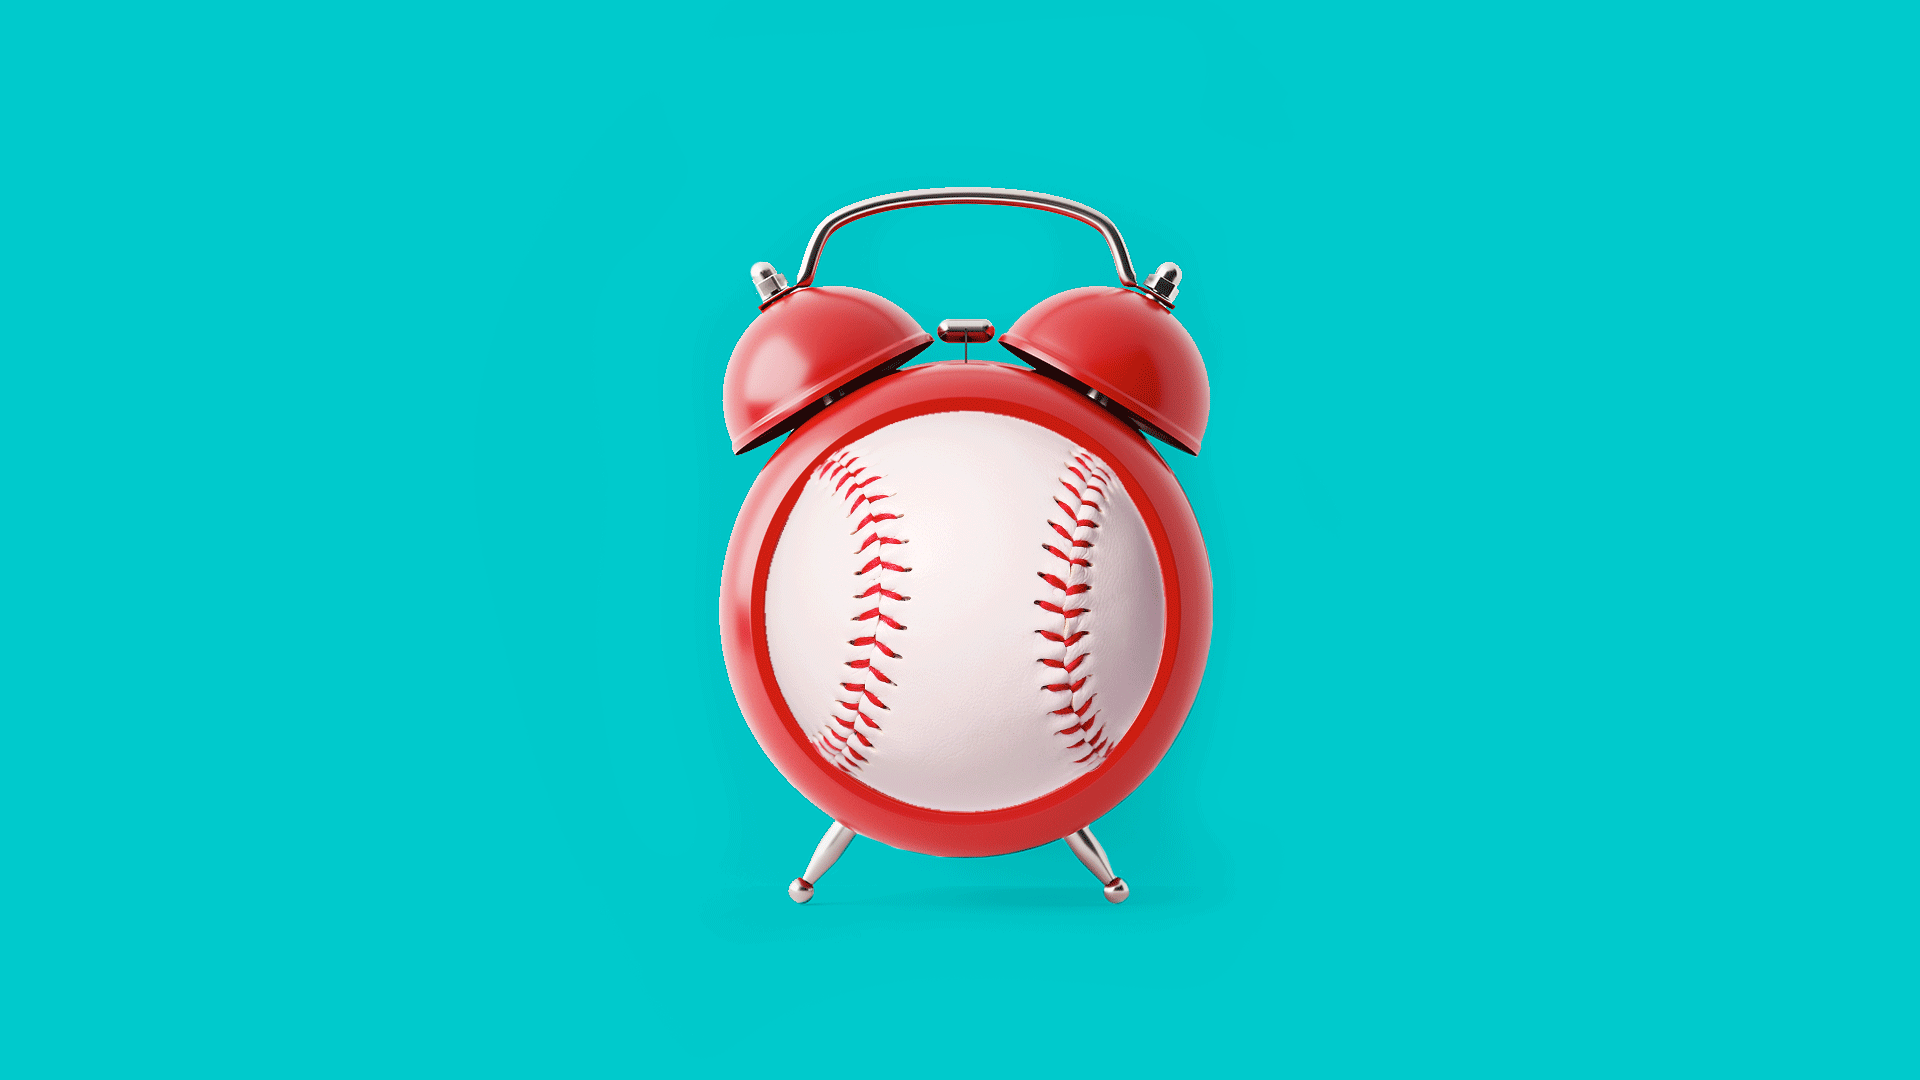 Illustration of a baseball alarm clock.